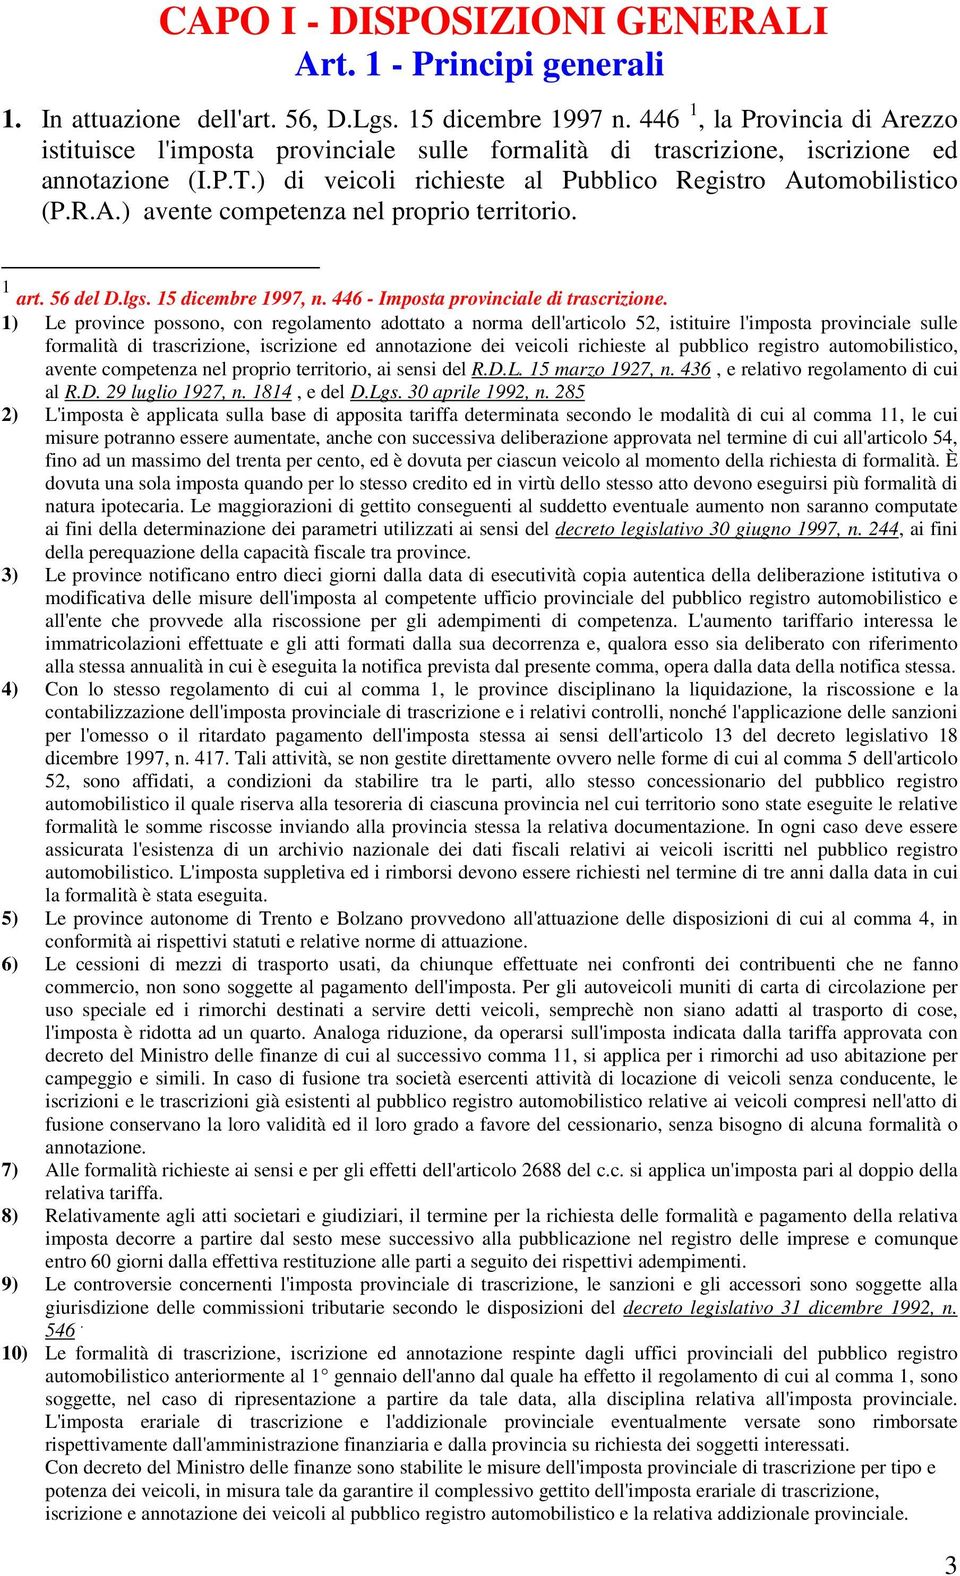 1 art. 56 del D.lgs. 15 dicembre 1997, n. 446 - Imposta provinciale di trascrizione.